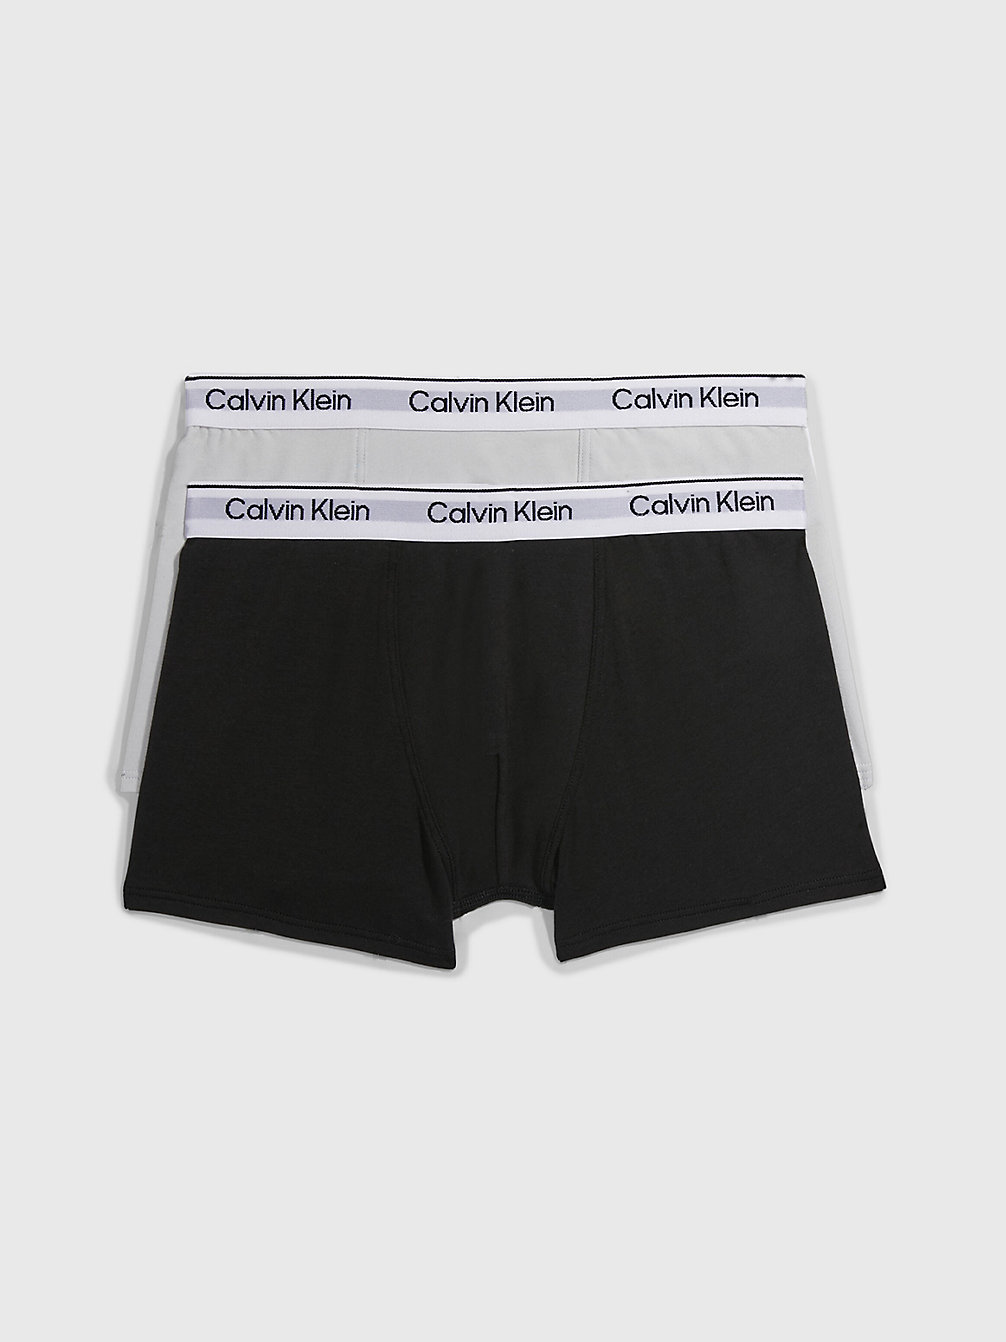 STONEGREY/PVHBLACK 2er-Pack Boxershorts Für Jungen - Modern Cotton undefined Jungen Calvin Klein